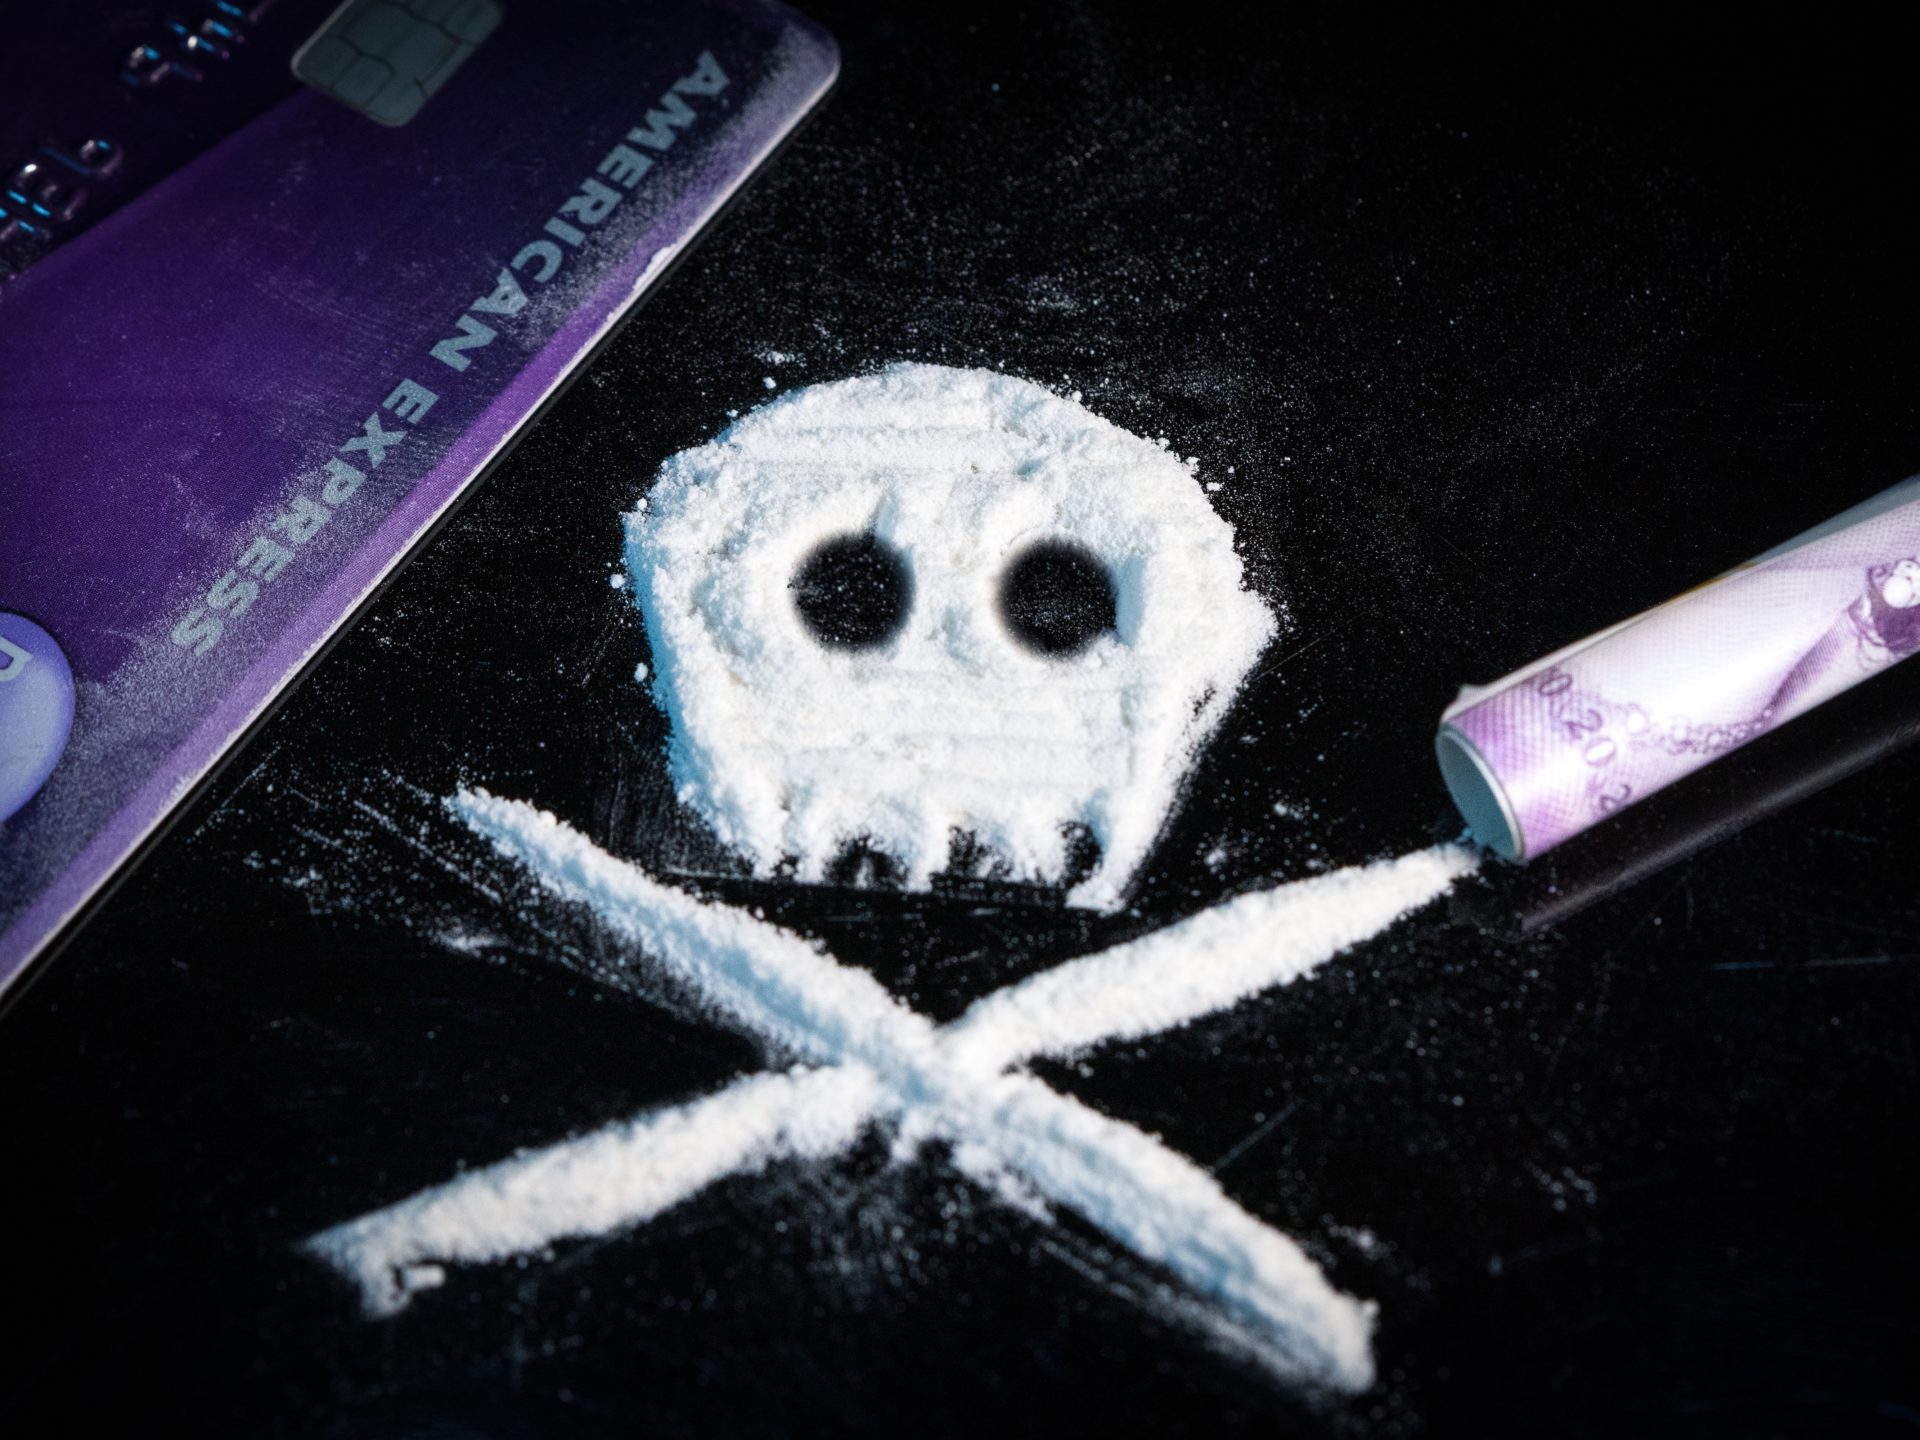 Svizzera vuole legalizzare cocaina: ce n'è troppa, costa meno della birra